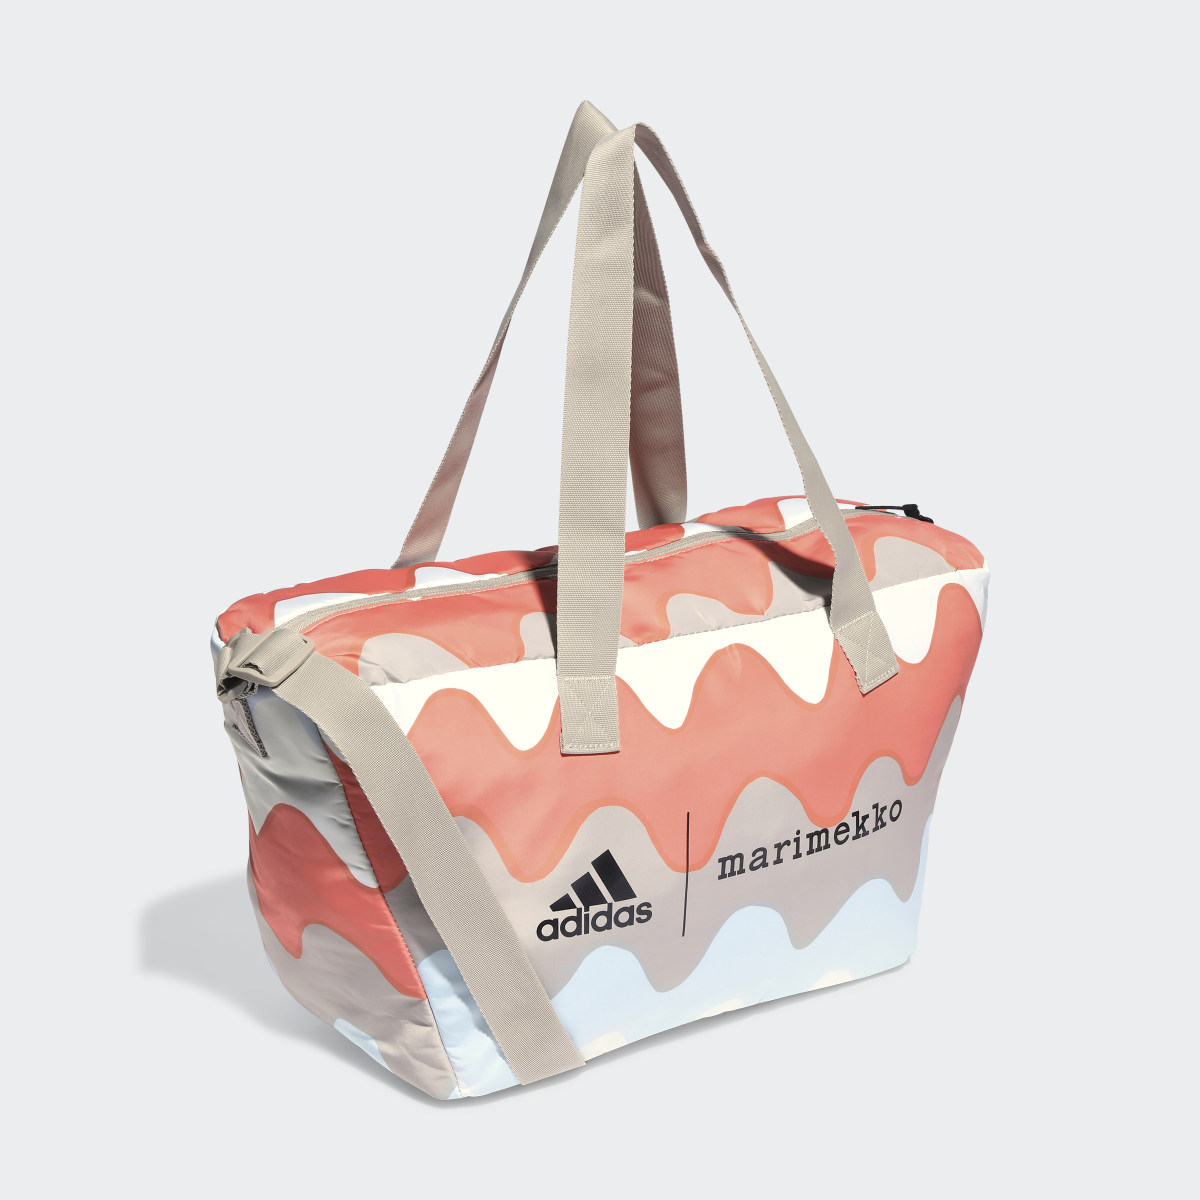 Adidas x Marimekko Shopper Designed 2 Move Training Bag. 4